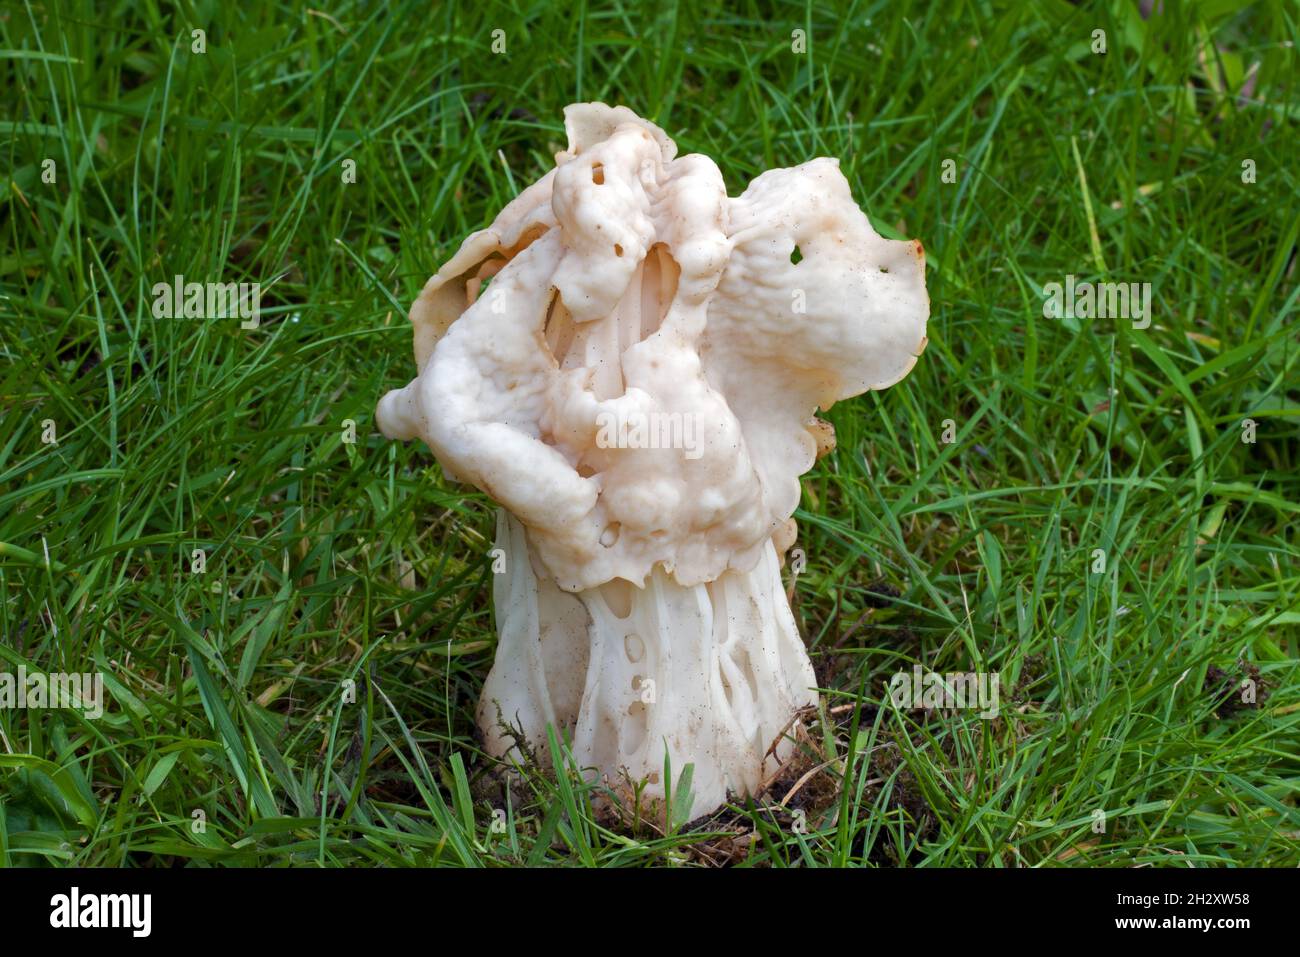 Helvella crisa (sella bianca) è un fungo ascomycete che cresce nelle praterie così come nelle foreste umide di latifoglie. Foto Stock